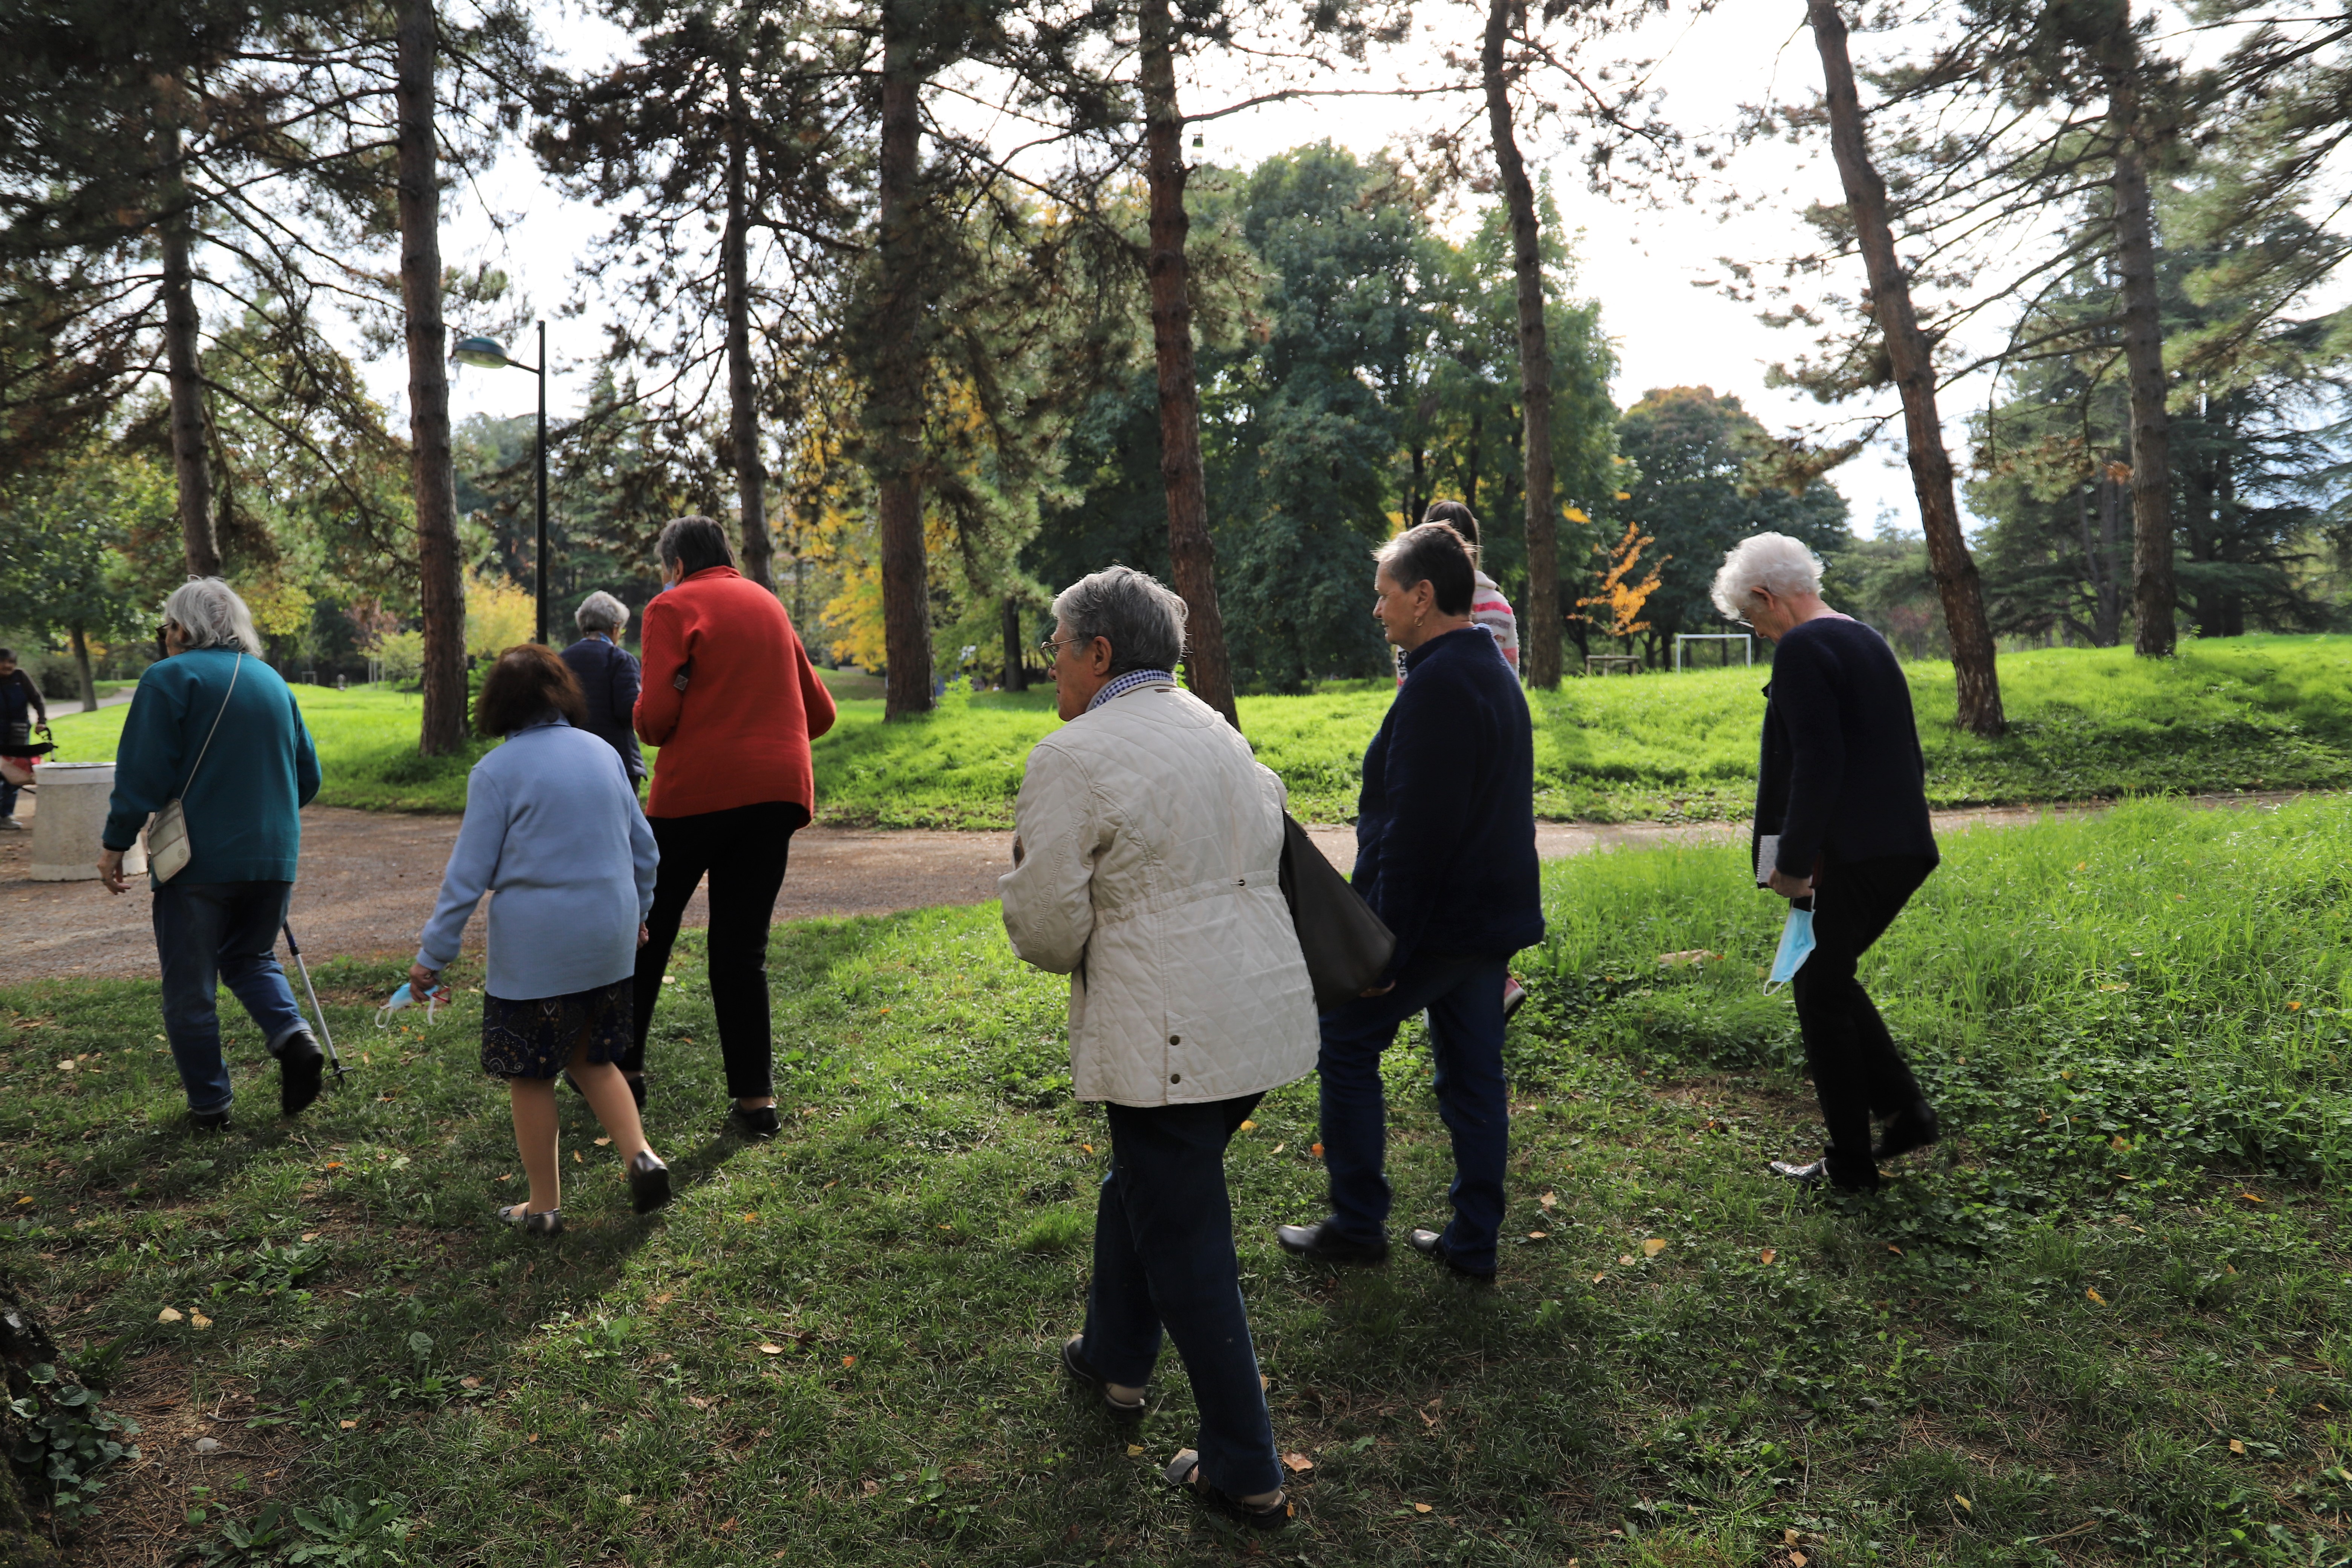 Une promenade était organisée dans le parc Maurice-Thorez pour profiter de la nature ensemble.